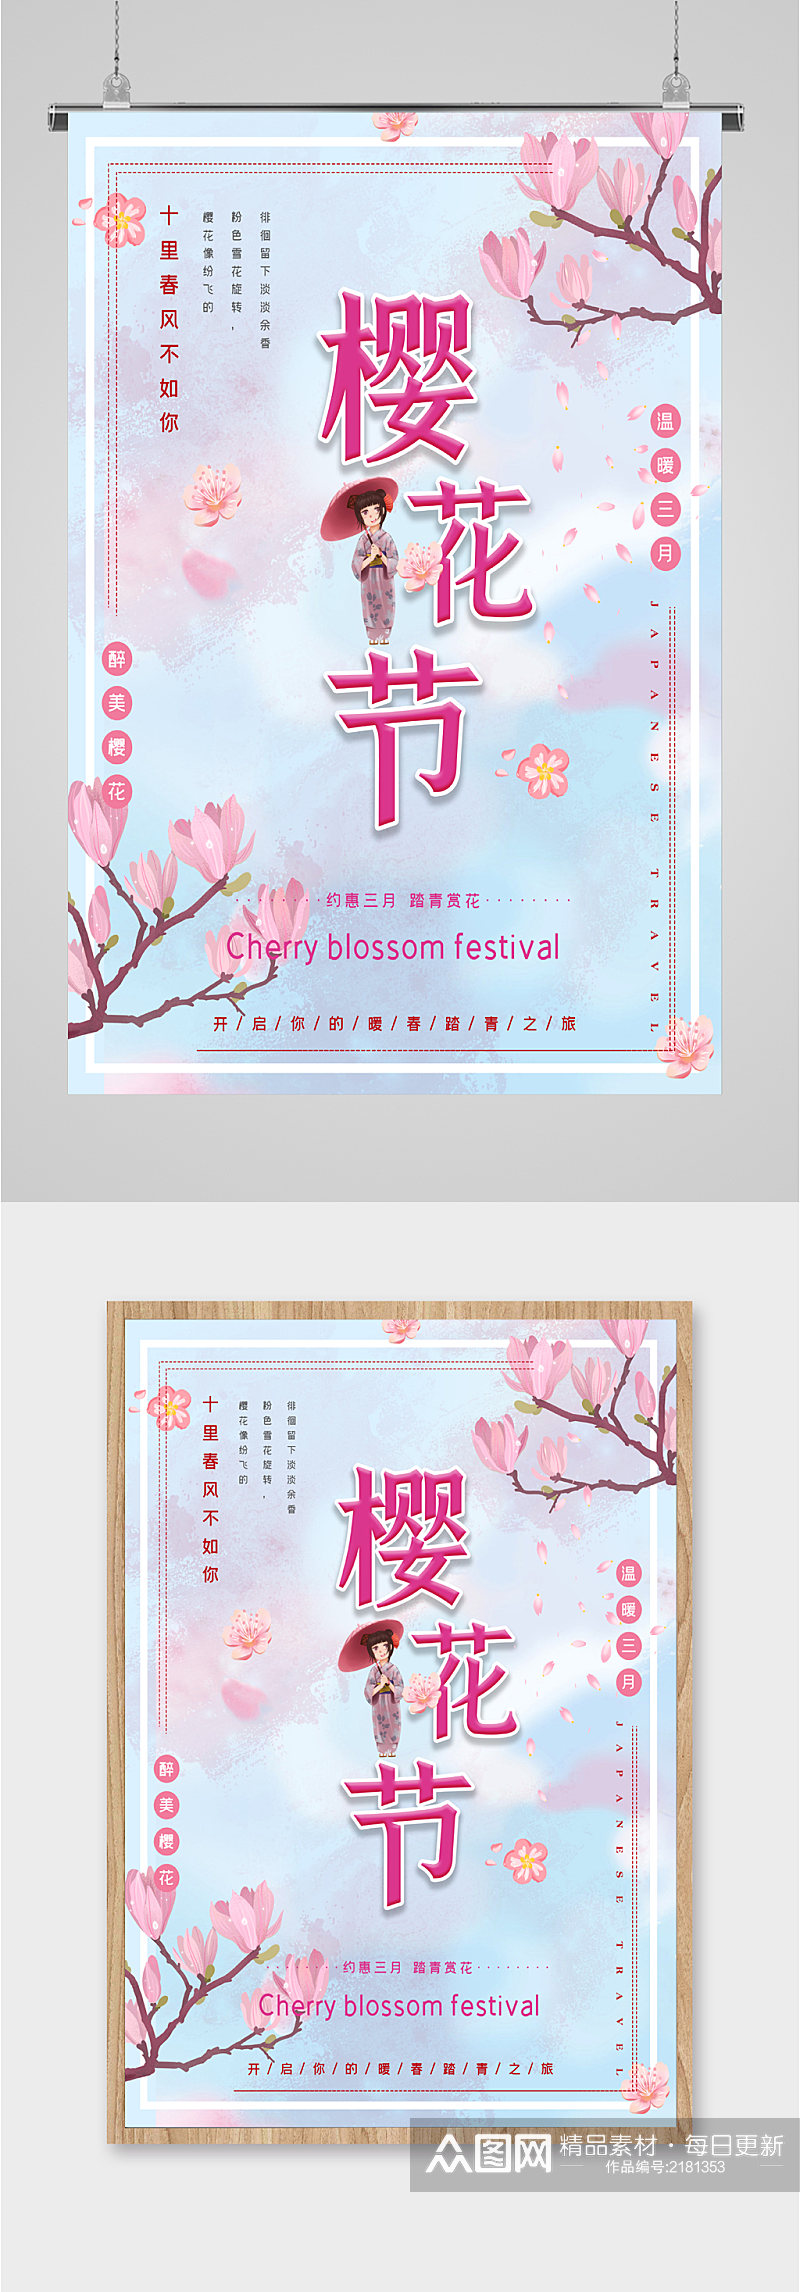 樱花节约惠三月活动海报素材